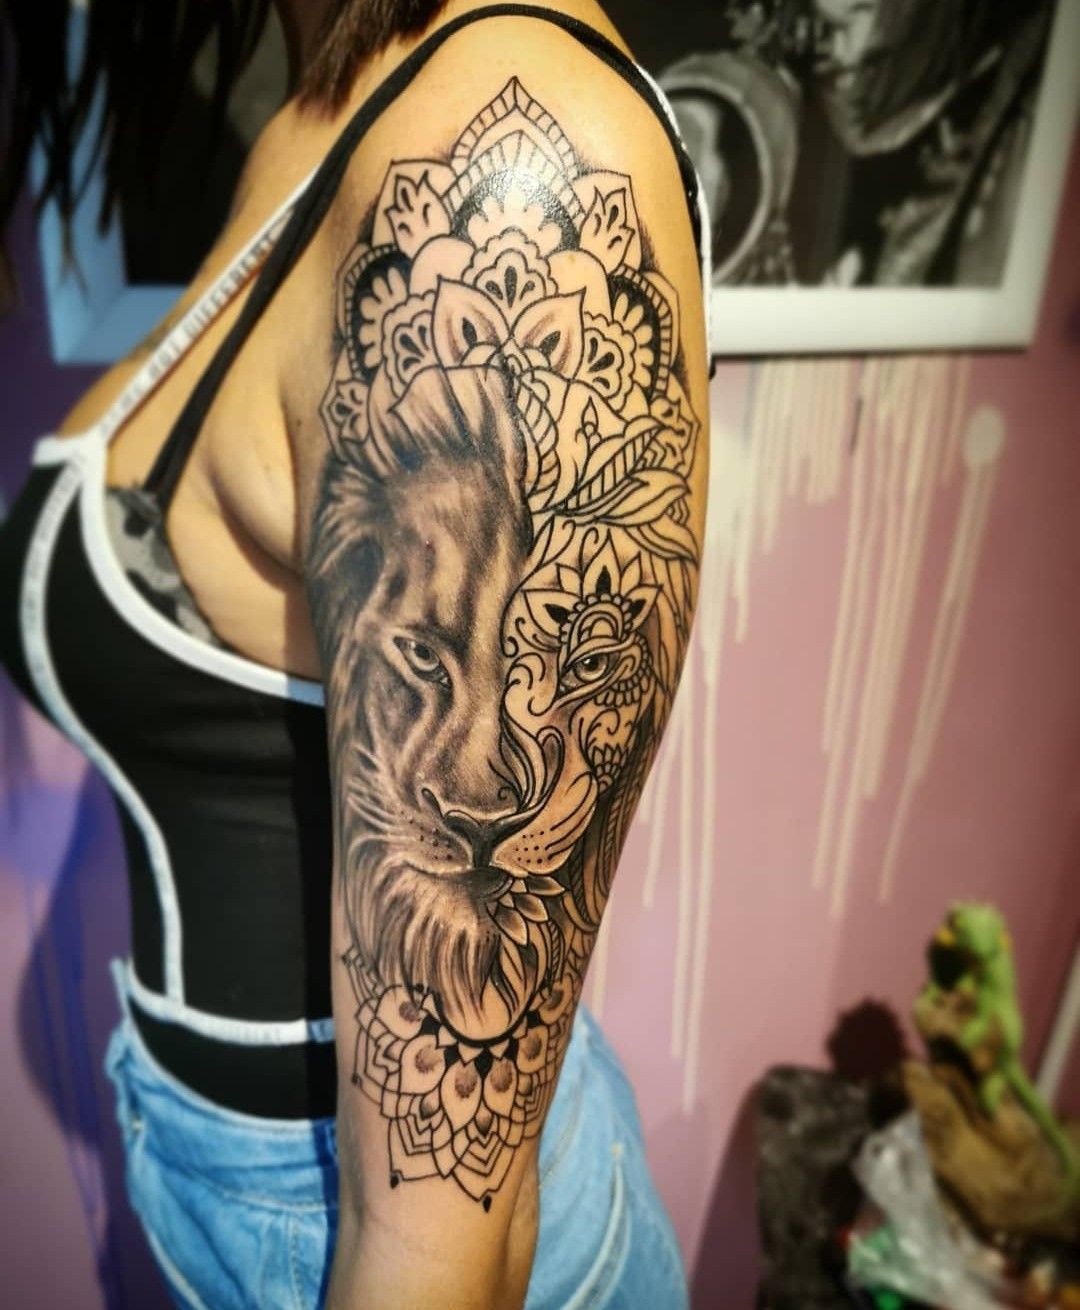 Állat tetoválás, Fantázia tetoválás, Fekete fehér tetoválás, Felkar tetoválás, MANDALA  Tetoválás, Portré tetoválás, Realisztikus tetoválás